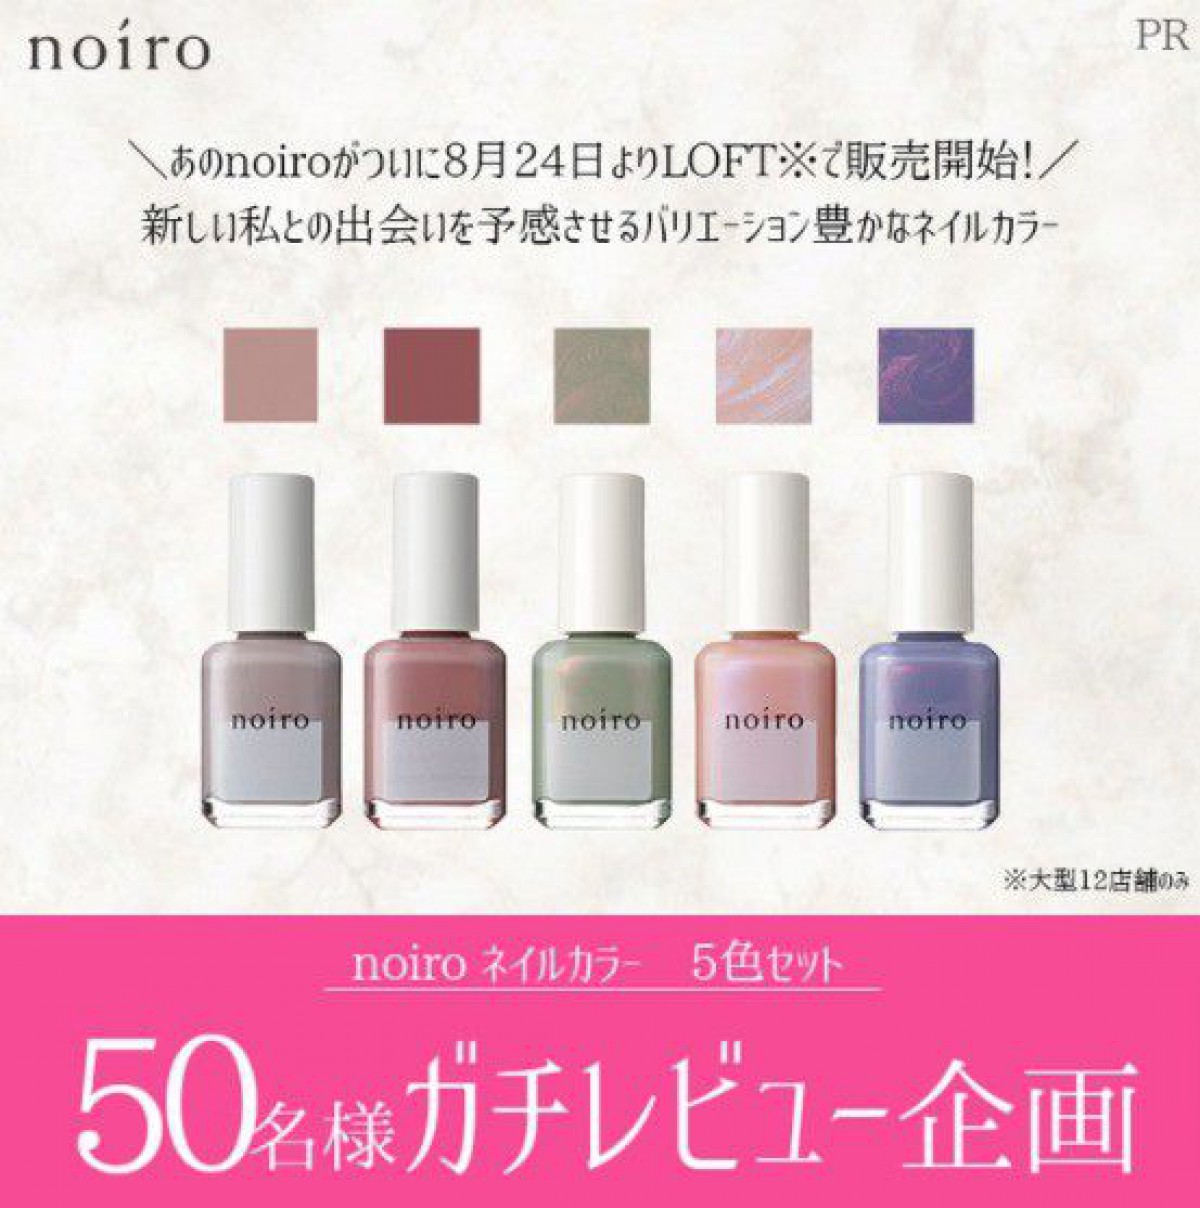 ネイルカラー5色セットの商品モニターキャンペーン☆